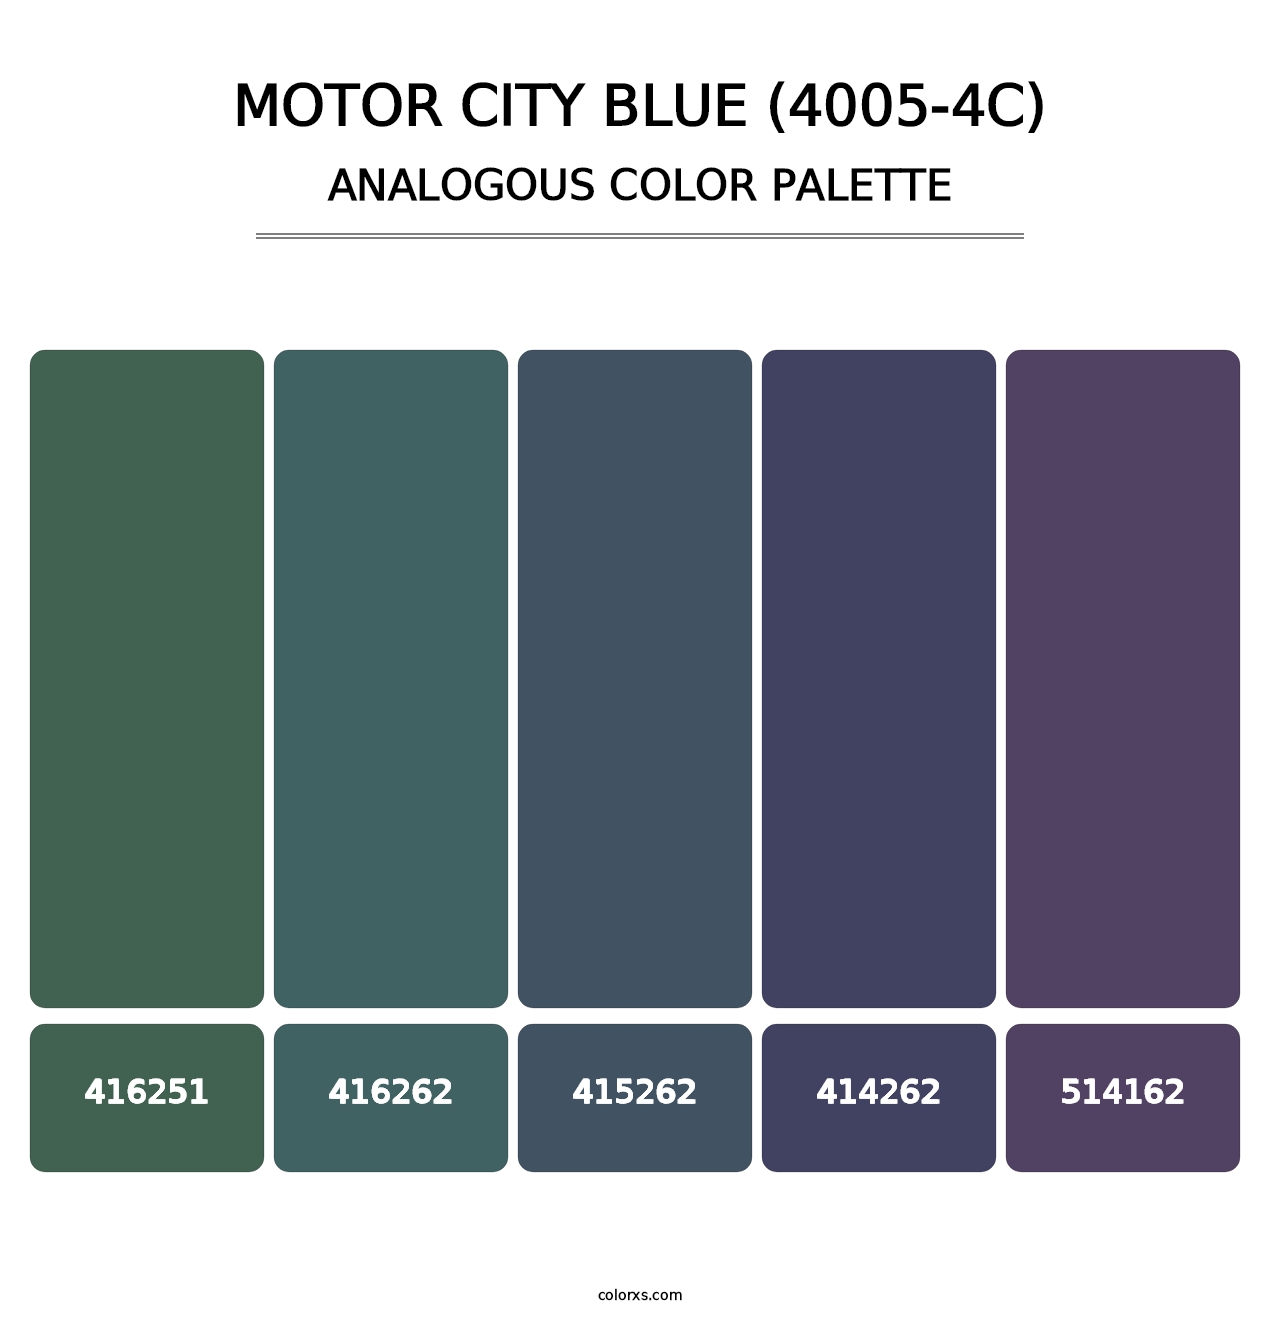 Motor City Blue (4005-4C) - Analogous Color Palette